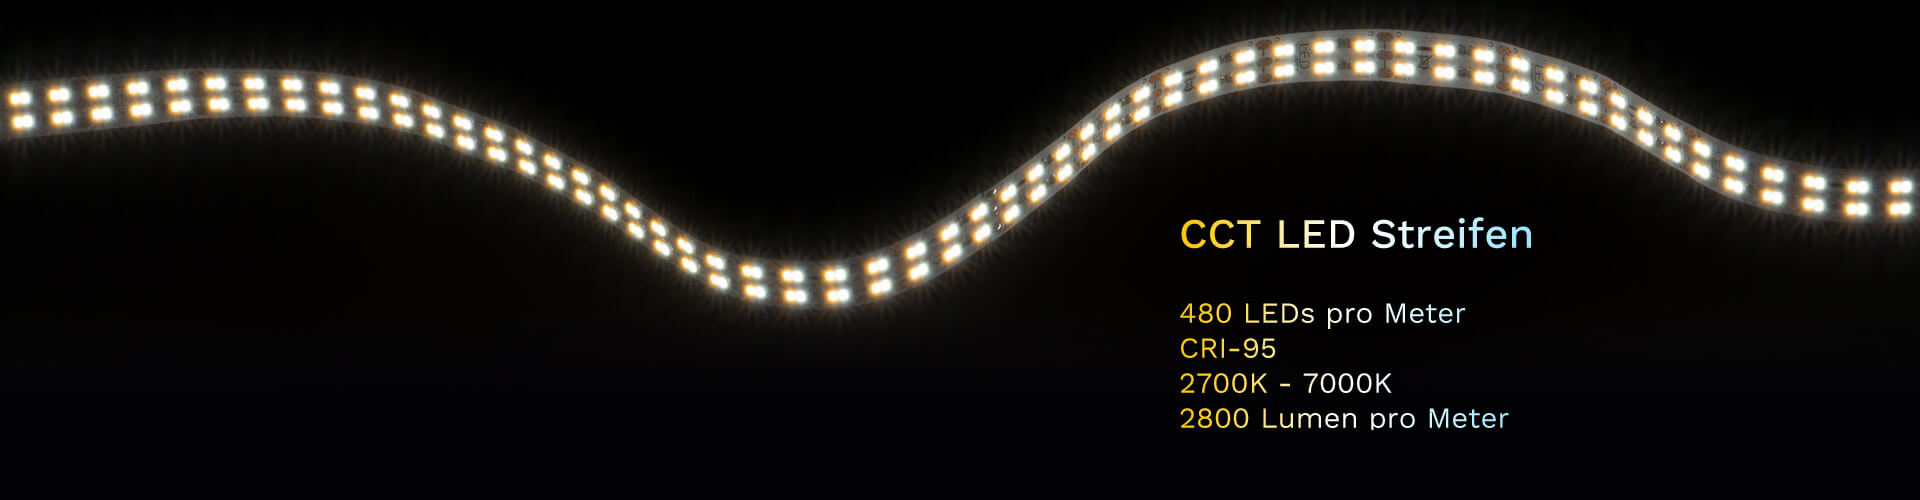 High Power LED Streifen mit 3800 Lumen pro Meter und Effizient A++